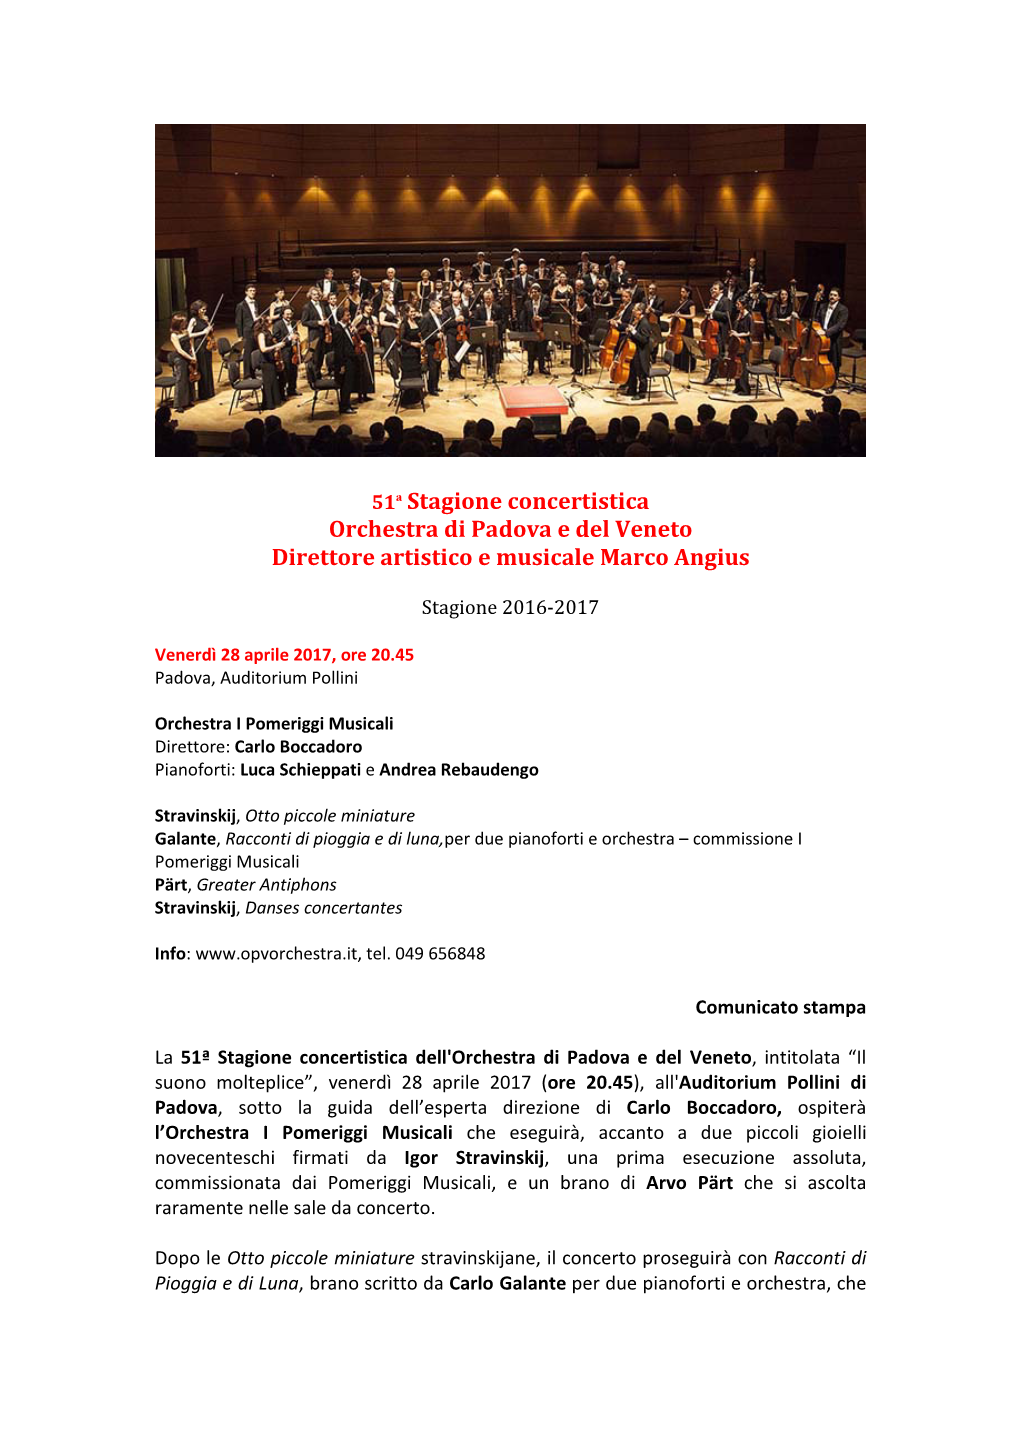 51ª Stagione Concertistica Orchestra Di Padova E Del Veneto Direttore Artistico E Musicale Marco Angius